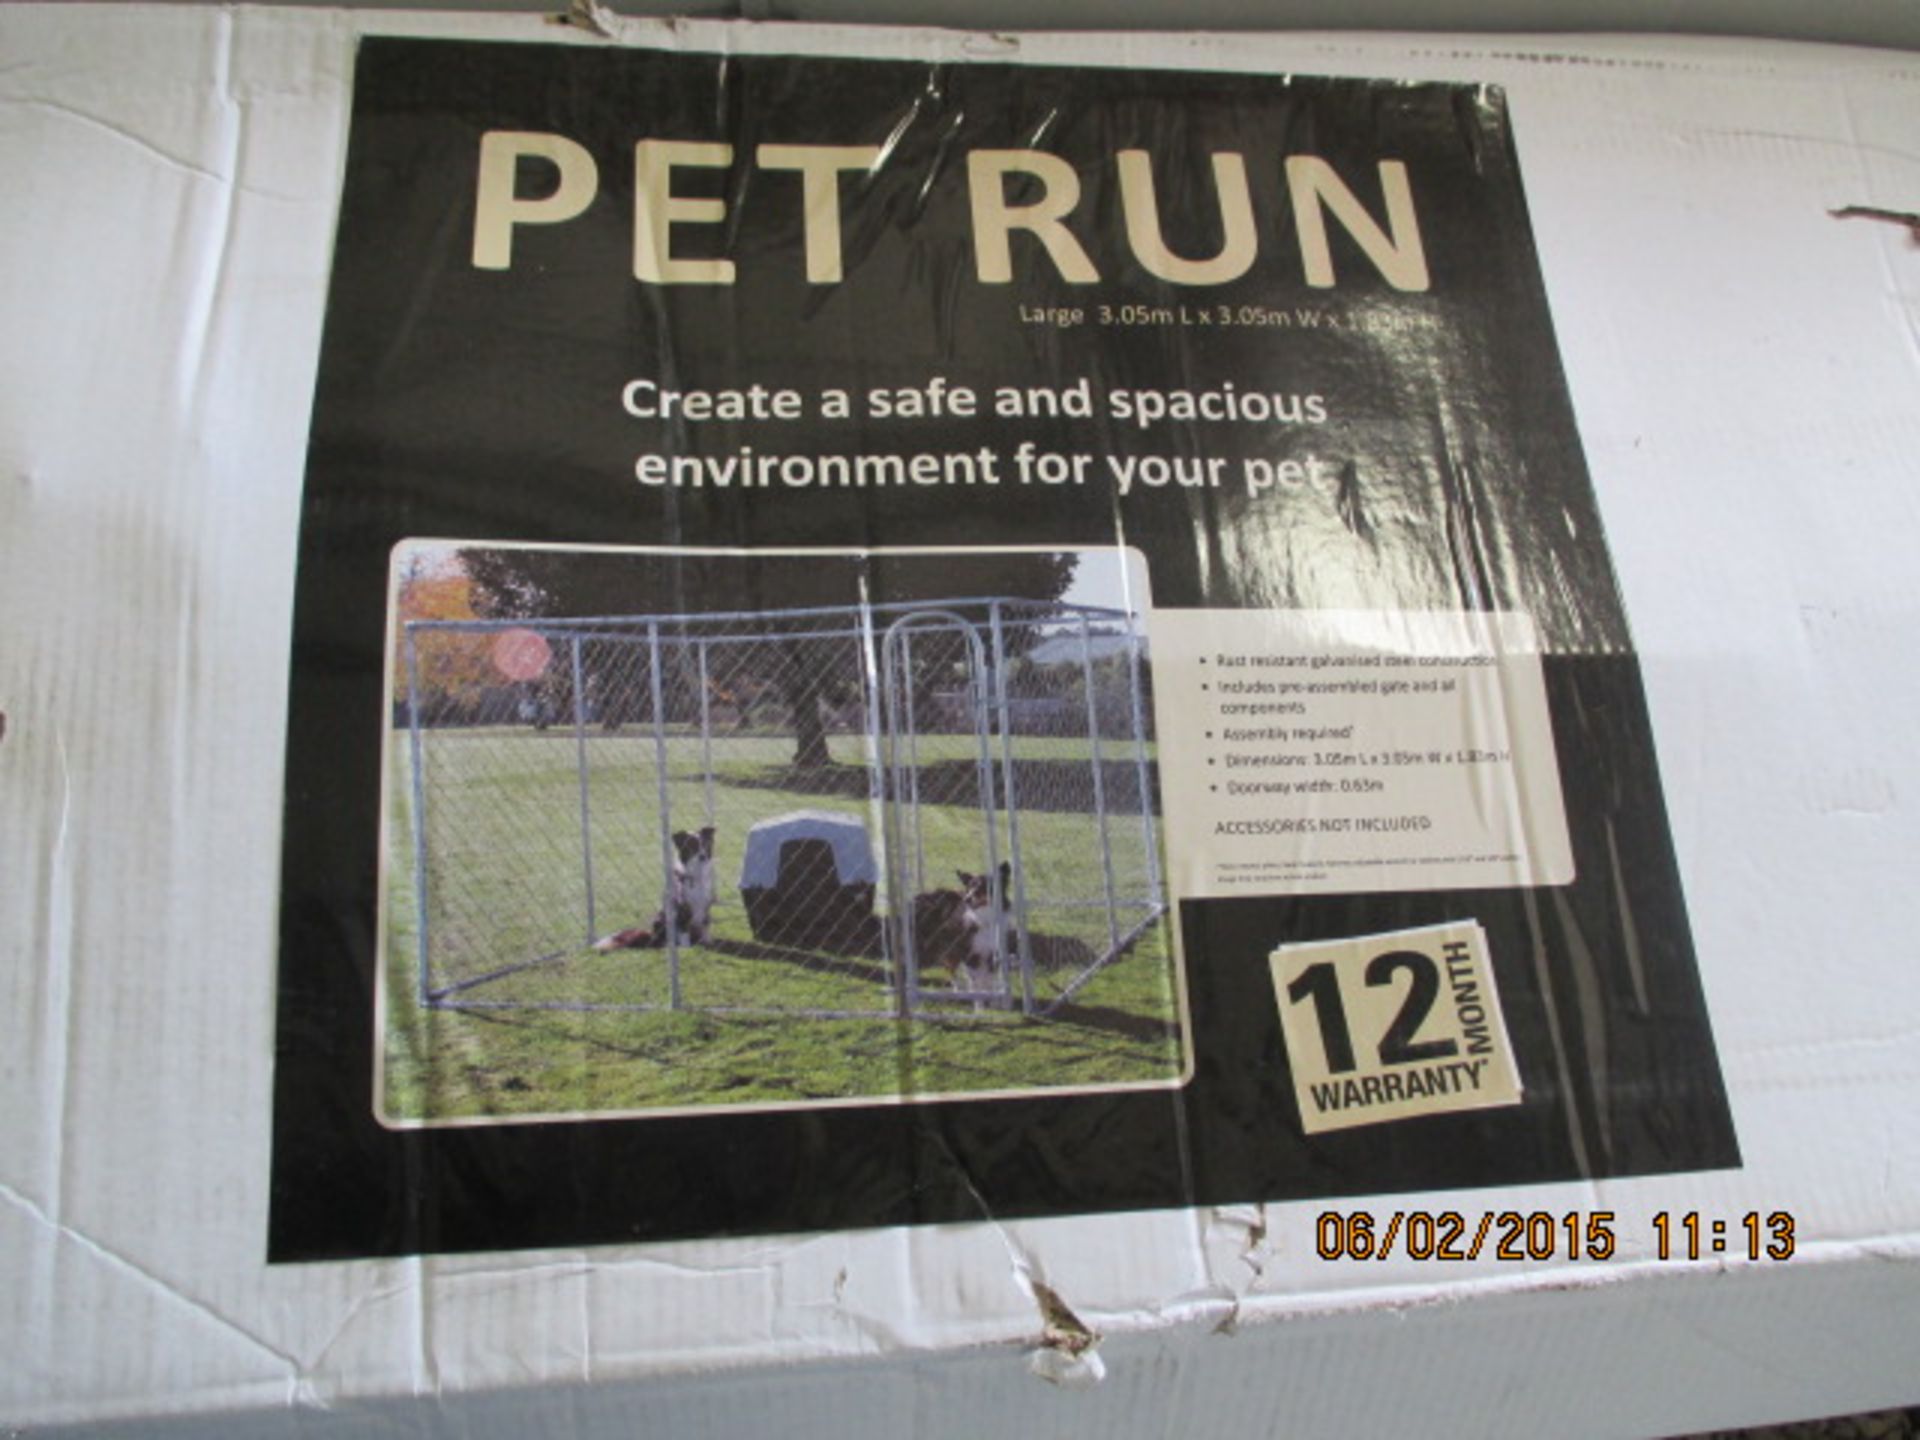 3.05m x 3.05m Pet Run (kennel)